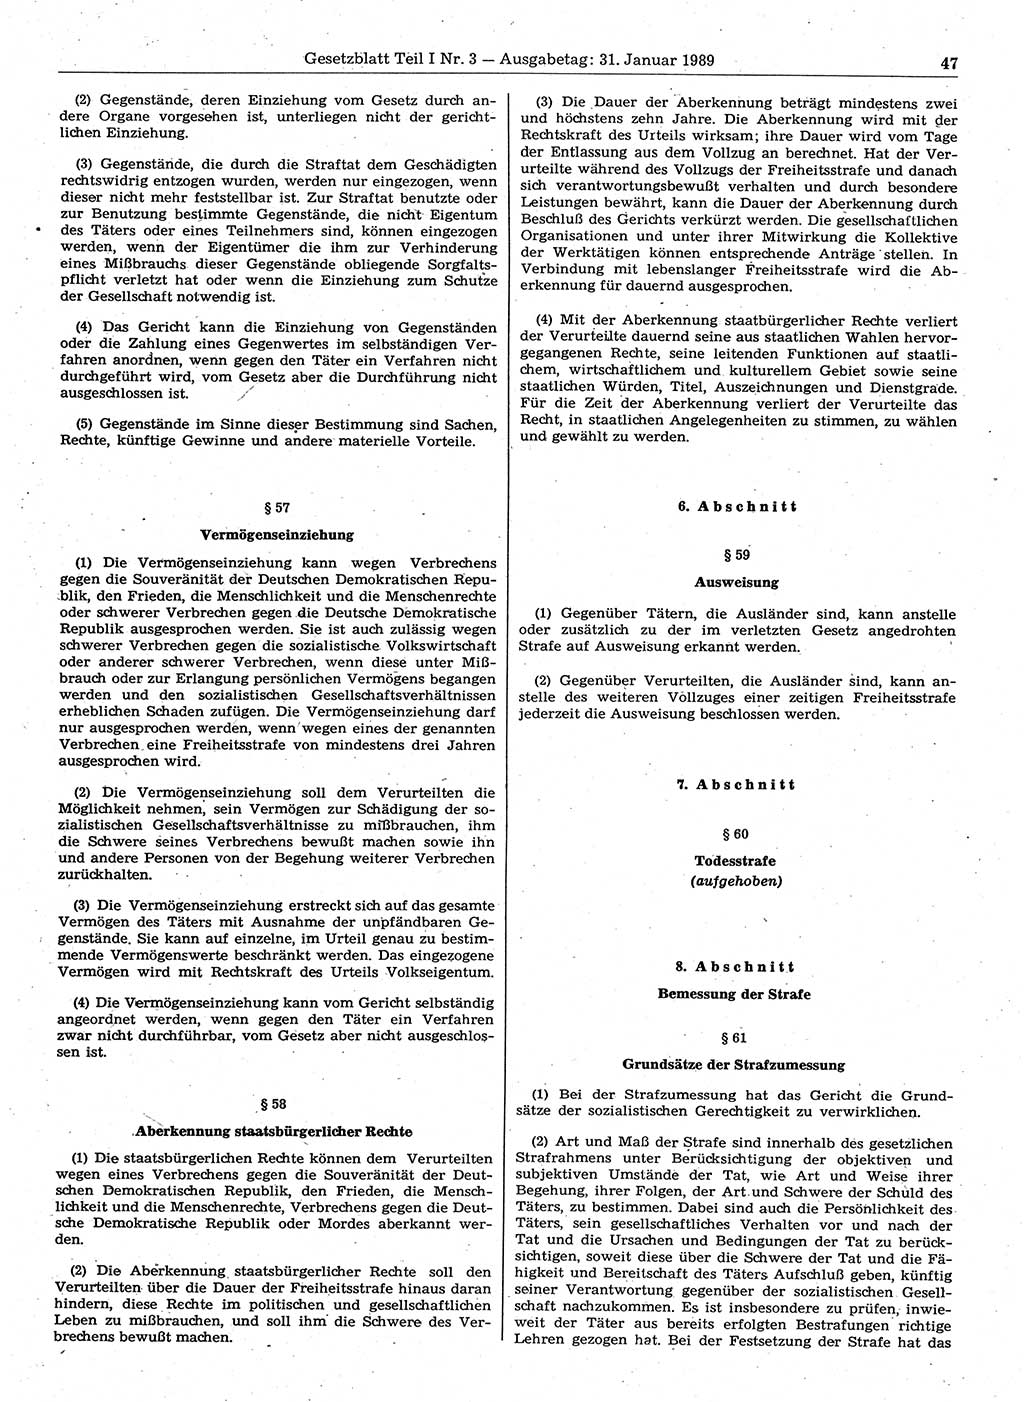 Gesetzblatt (GBl.) der Deutschen Demokratischen Republik (DDR) Teil Ⅰ 1989, Seite 47 (GBl. DDR Ⅰ 1989, S. 47)